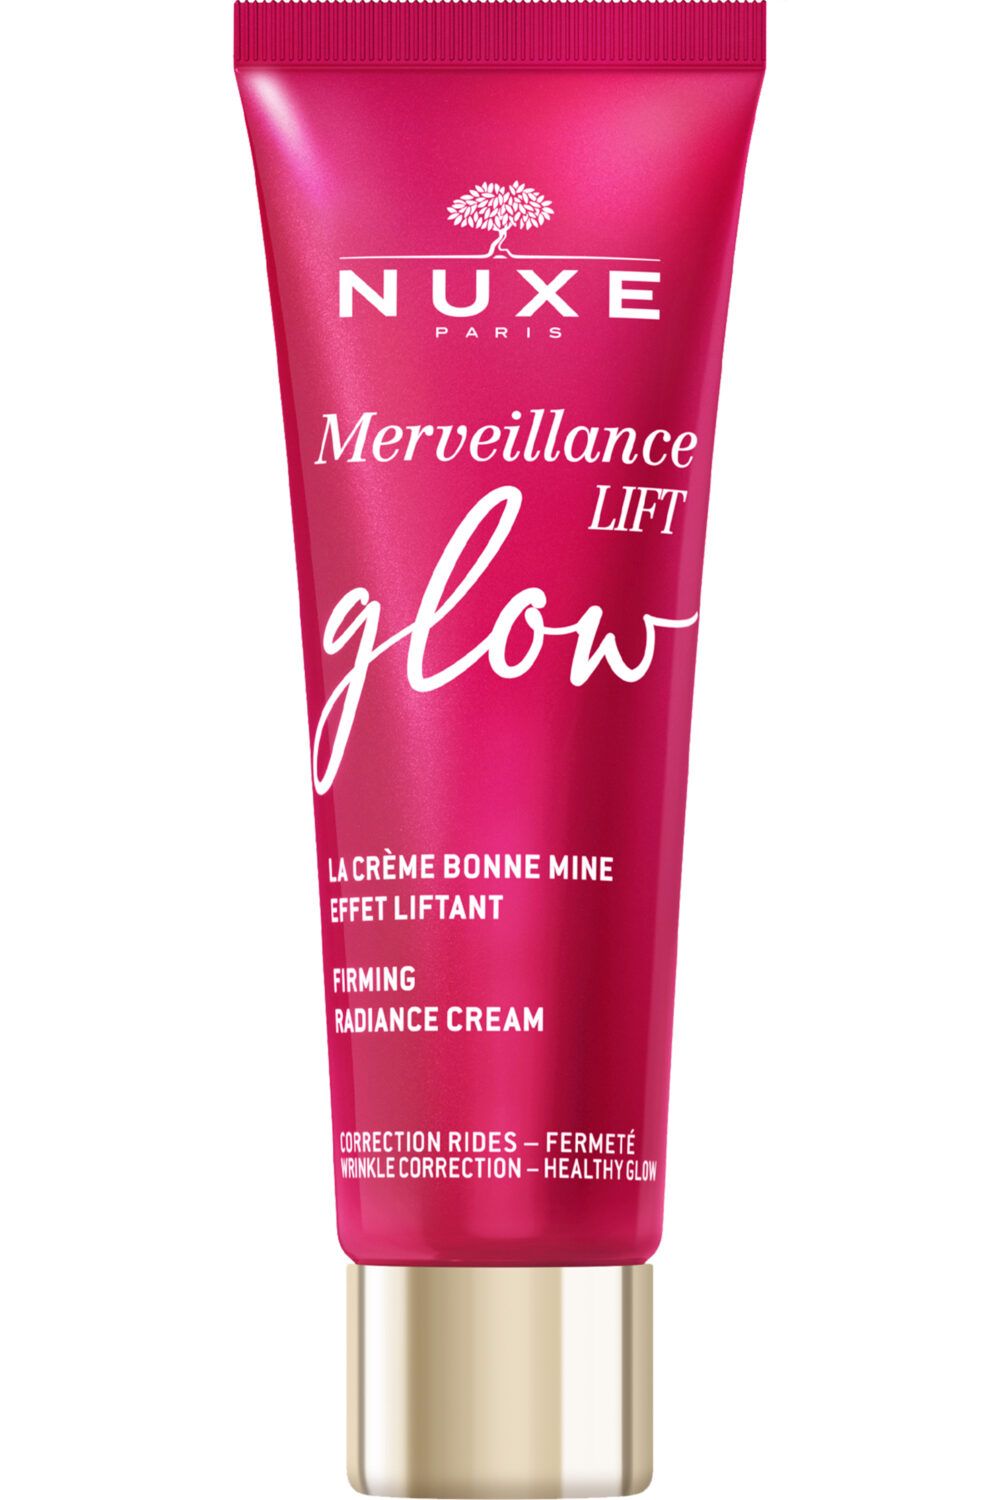 Nuxe - Crème bonne mine effet liftant Merveillance Lift glow